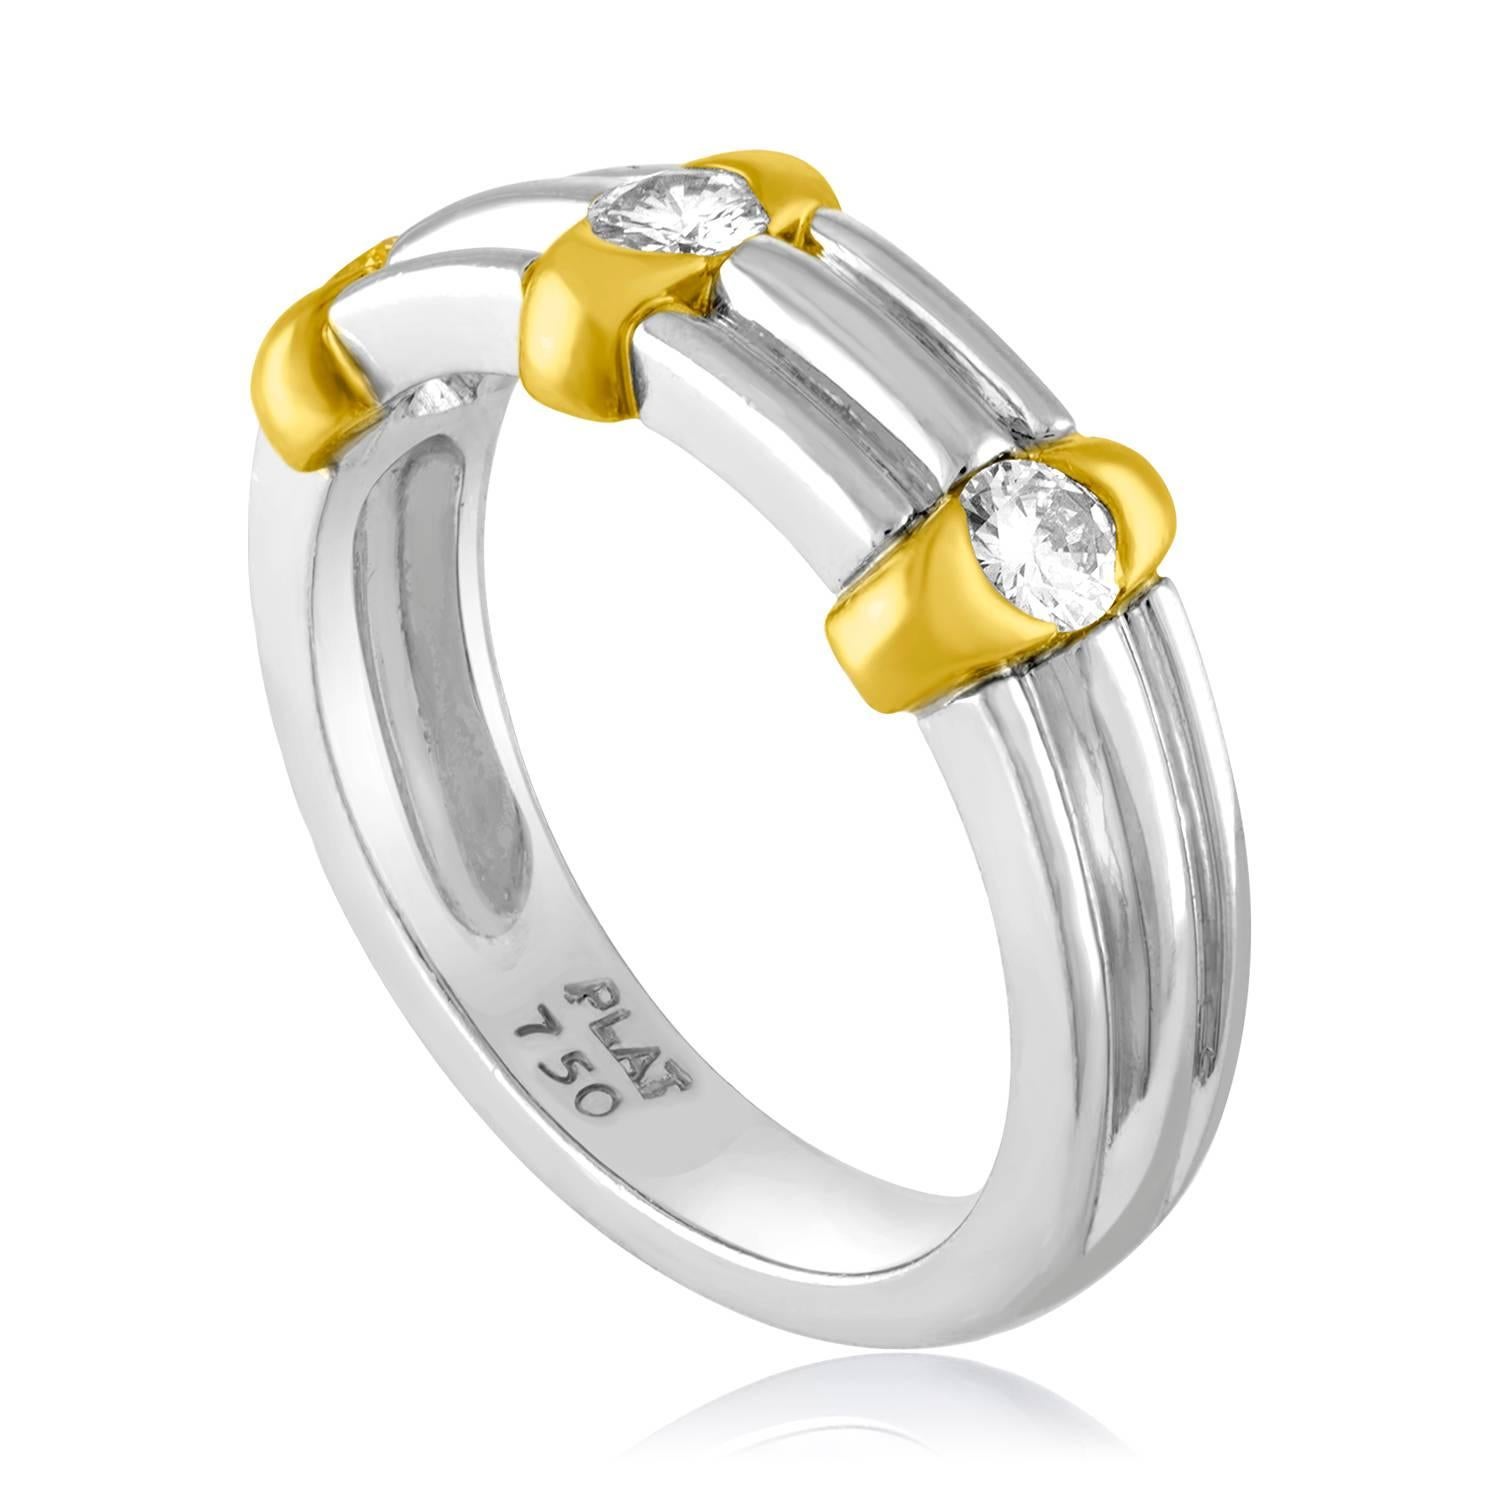 Bague de mariage à diamant pour homme.
La bague est en platine 950 et en or jaune 18 carats.
Les diamants de taille ronde font 0,60 ct G/H VS.
L'anneau est une taille 10.25, de grande taille.
L'anneau pèse 14,6 grammes.
L'anneau mesure 7,96 mm de